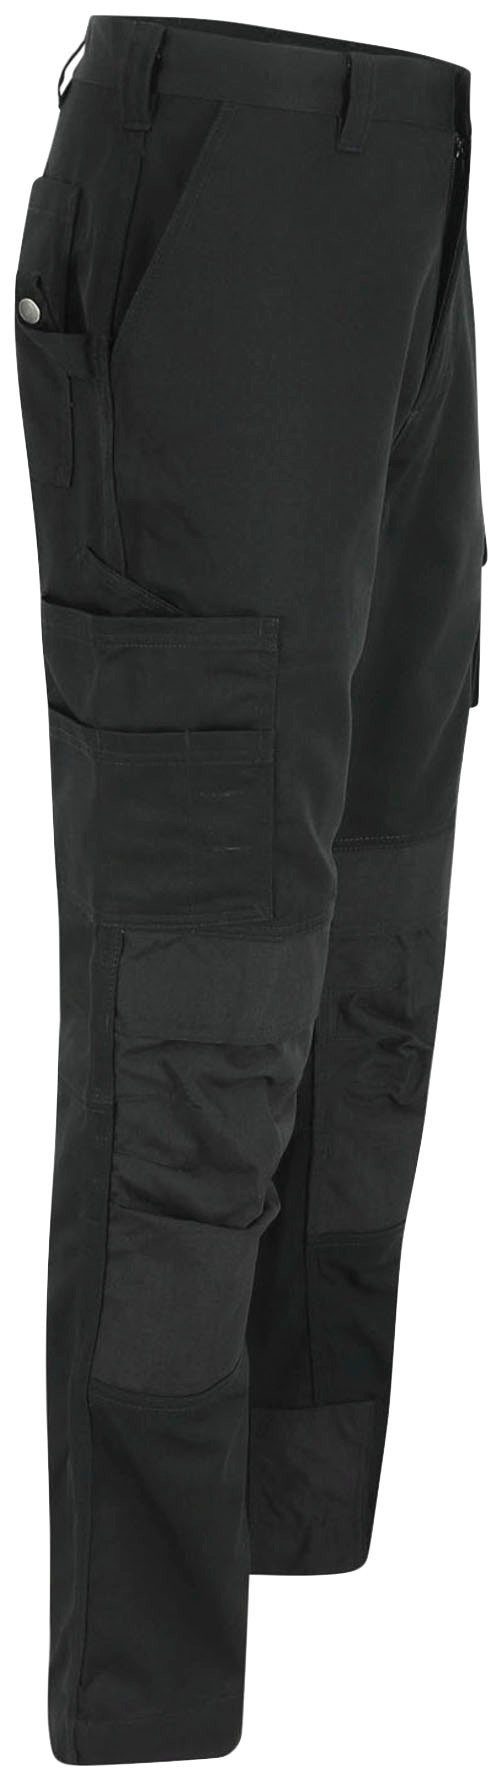 Herock 3-Naht, Arbeitshose HOSE schwarz TITAN SHORTLEG Taschen, angenehm wasserabweisend, Kurzgröβe, 12 sehr